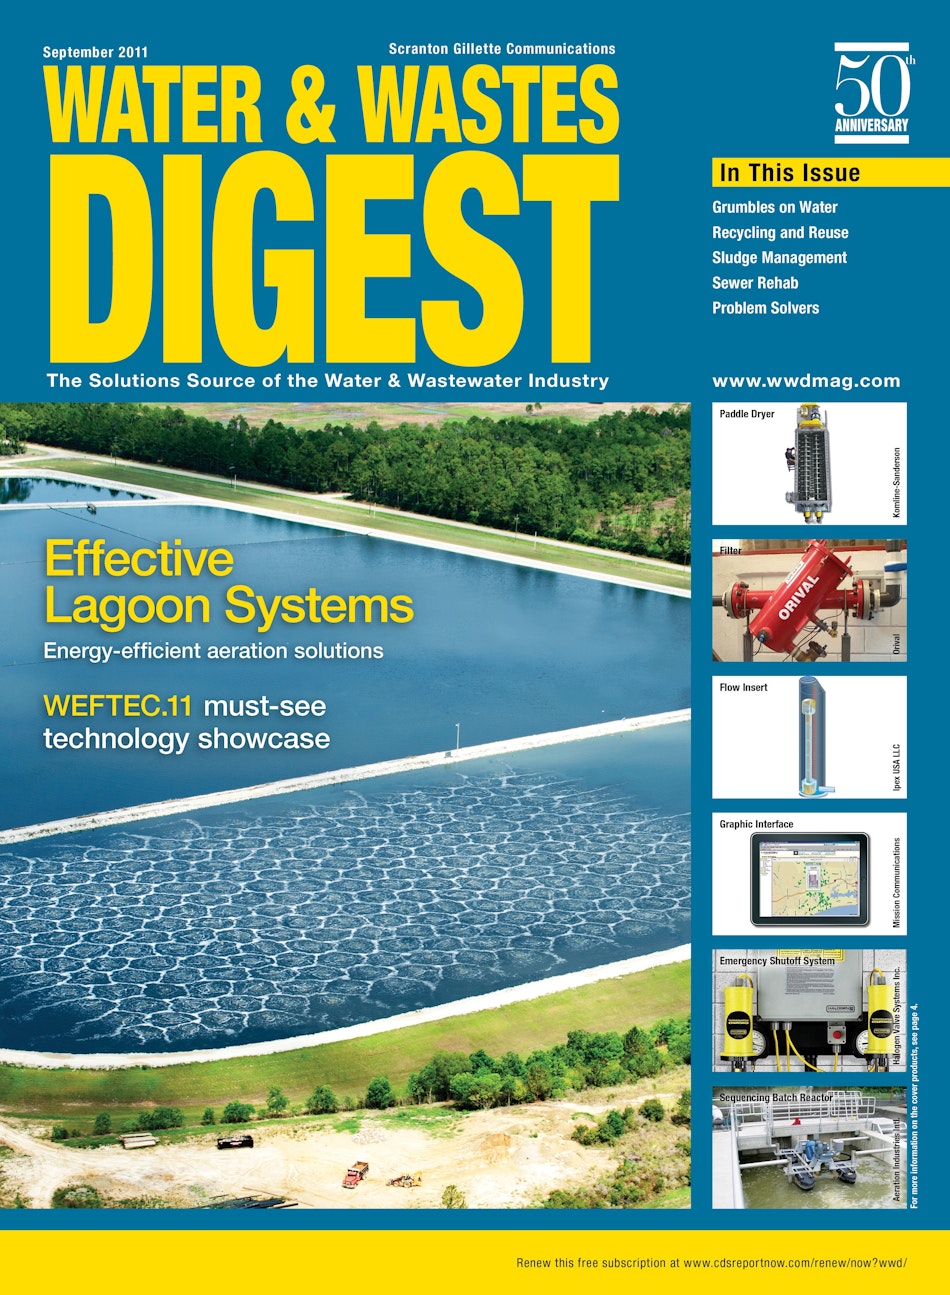 September 2011 cover image